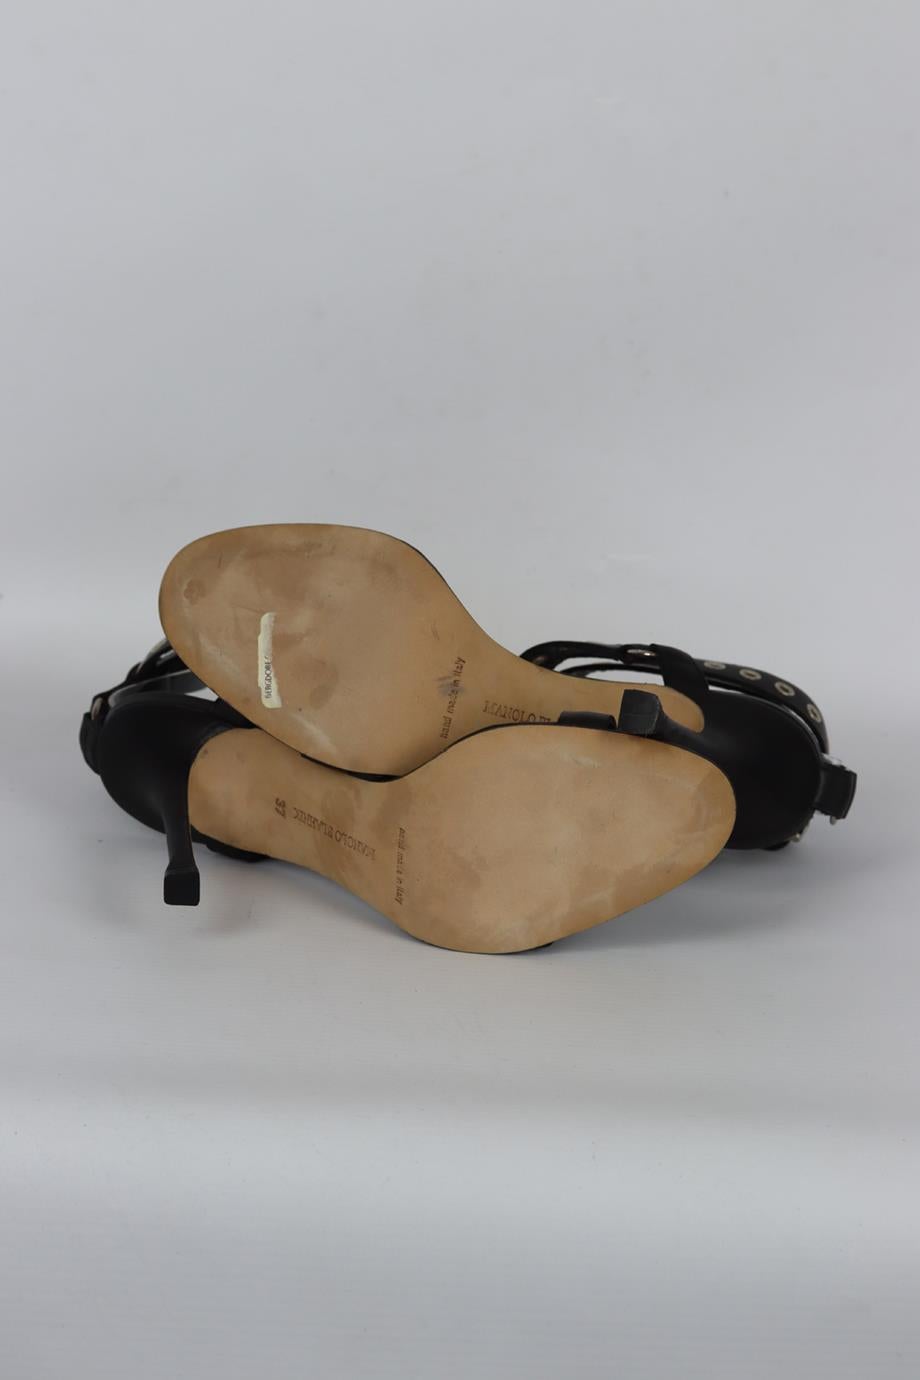 Manolo Blahnik Eyelet Embellished Leather Sandals Eu 37 Uk 4 Us 7 1